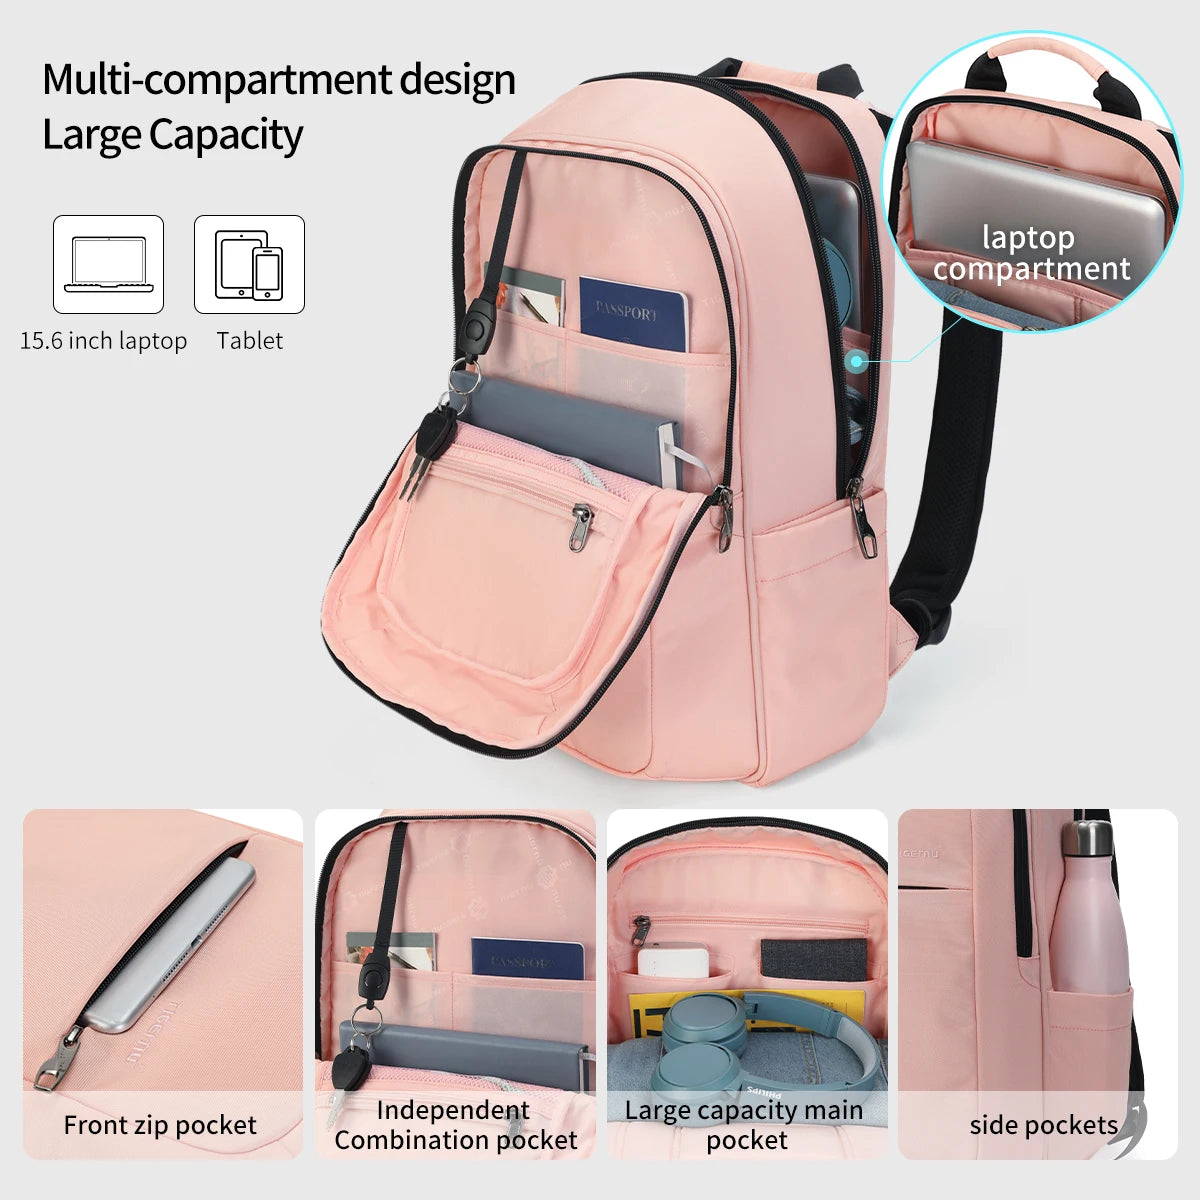 Lifetime Warranty High Quality Waterproof 15.6"Laptop Backpacks Men Women Travel Schoolbags Casual Light Mochilas Male Female